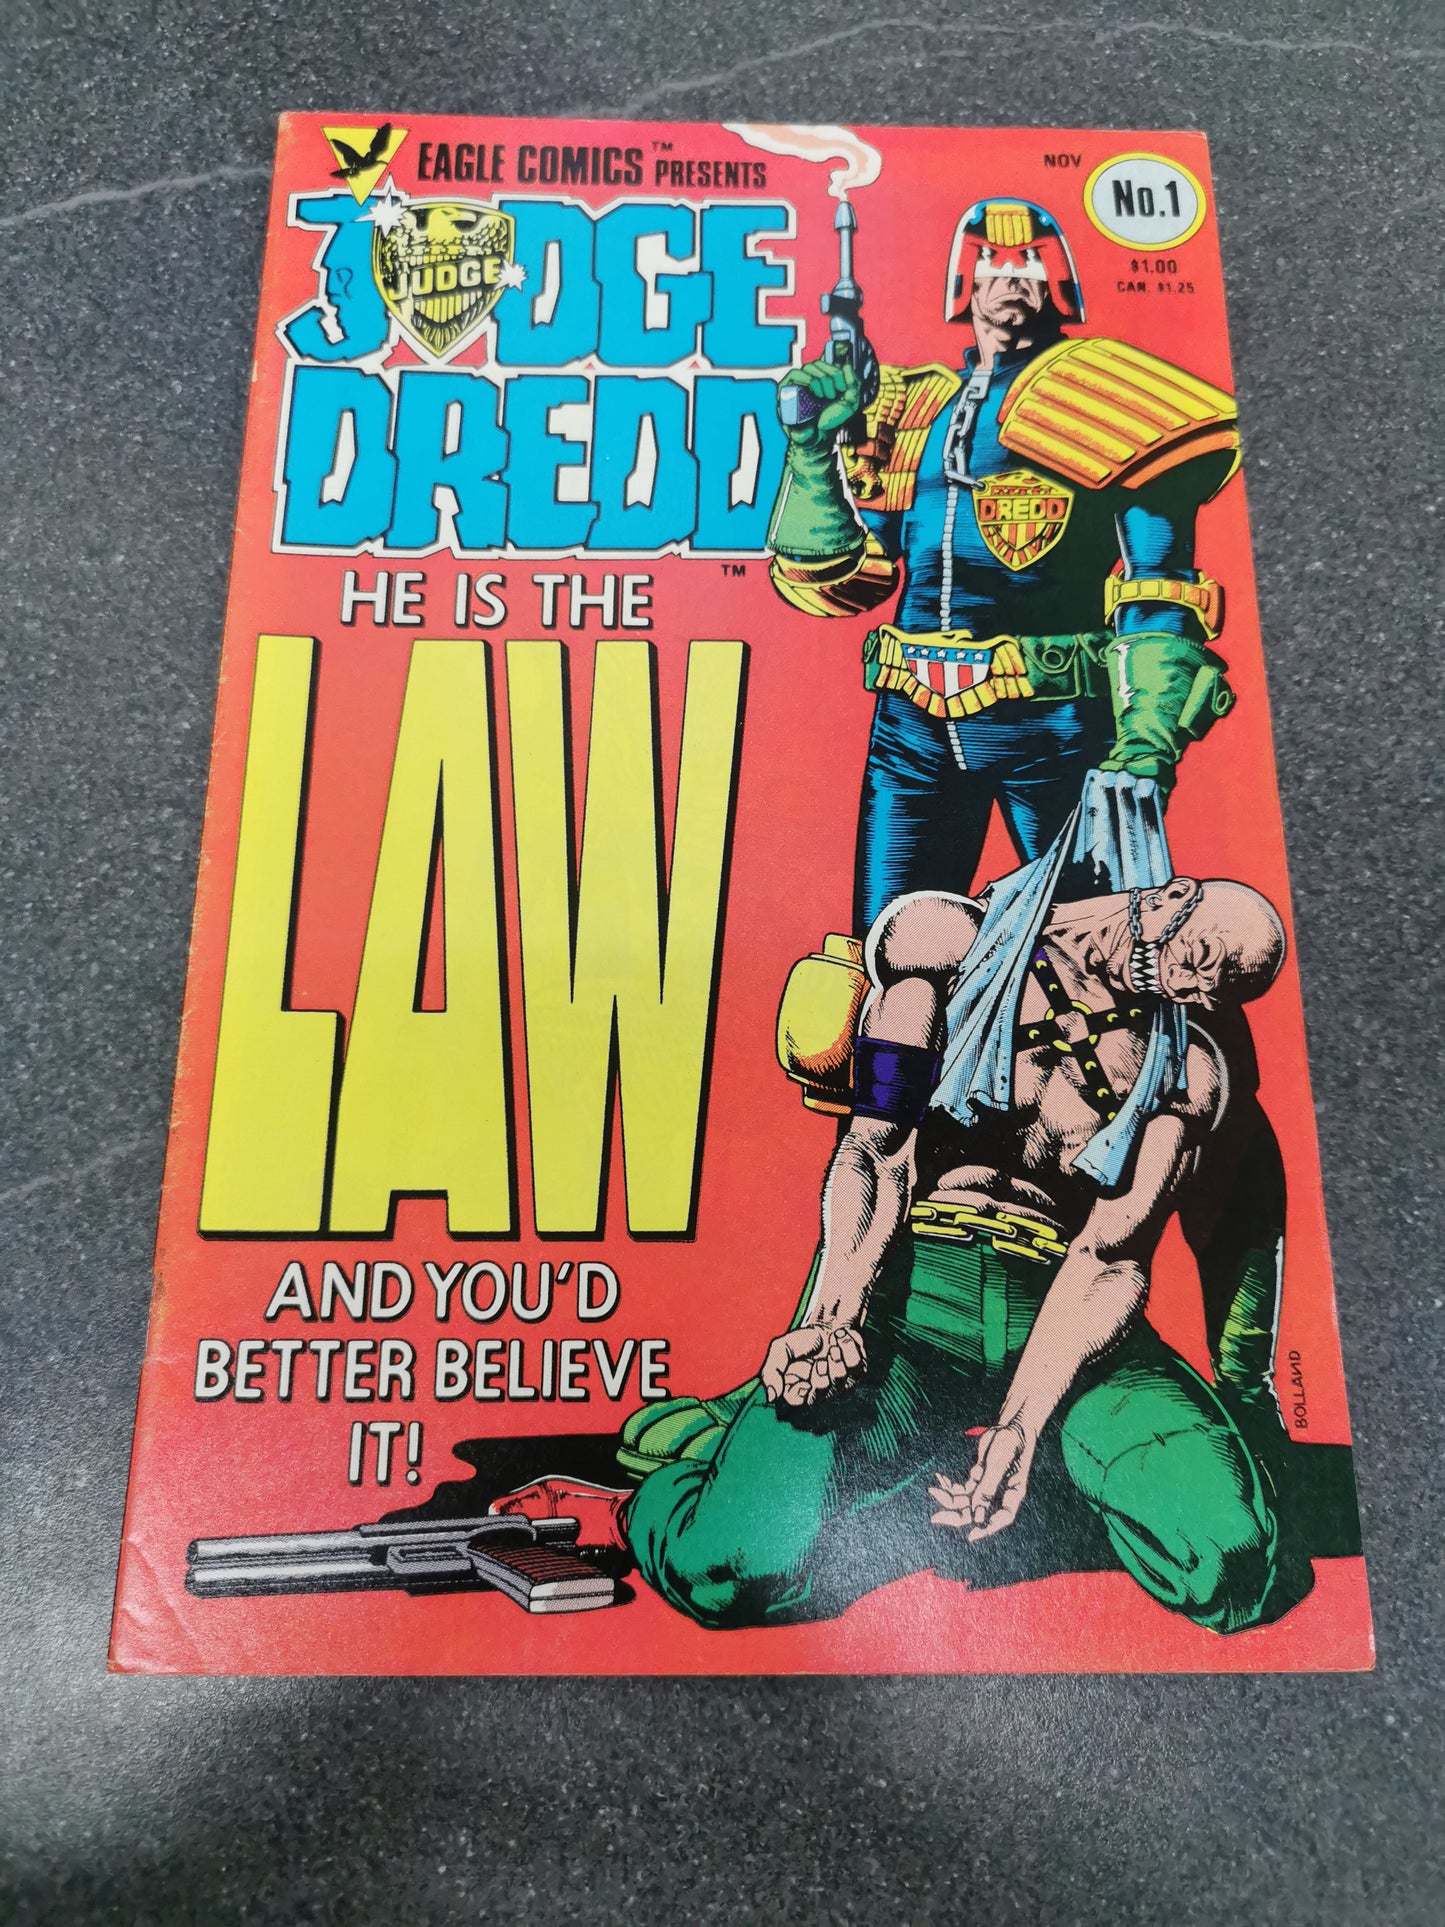 Eagle Comics Presents Judge Dredd #1 1983 comic